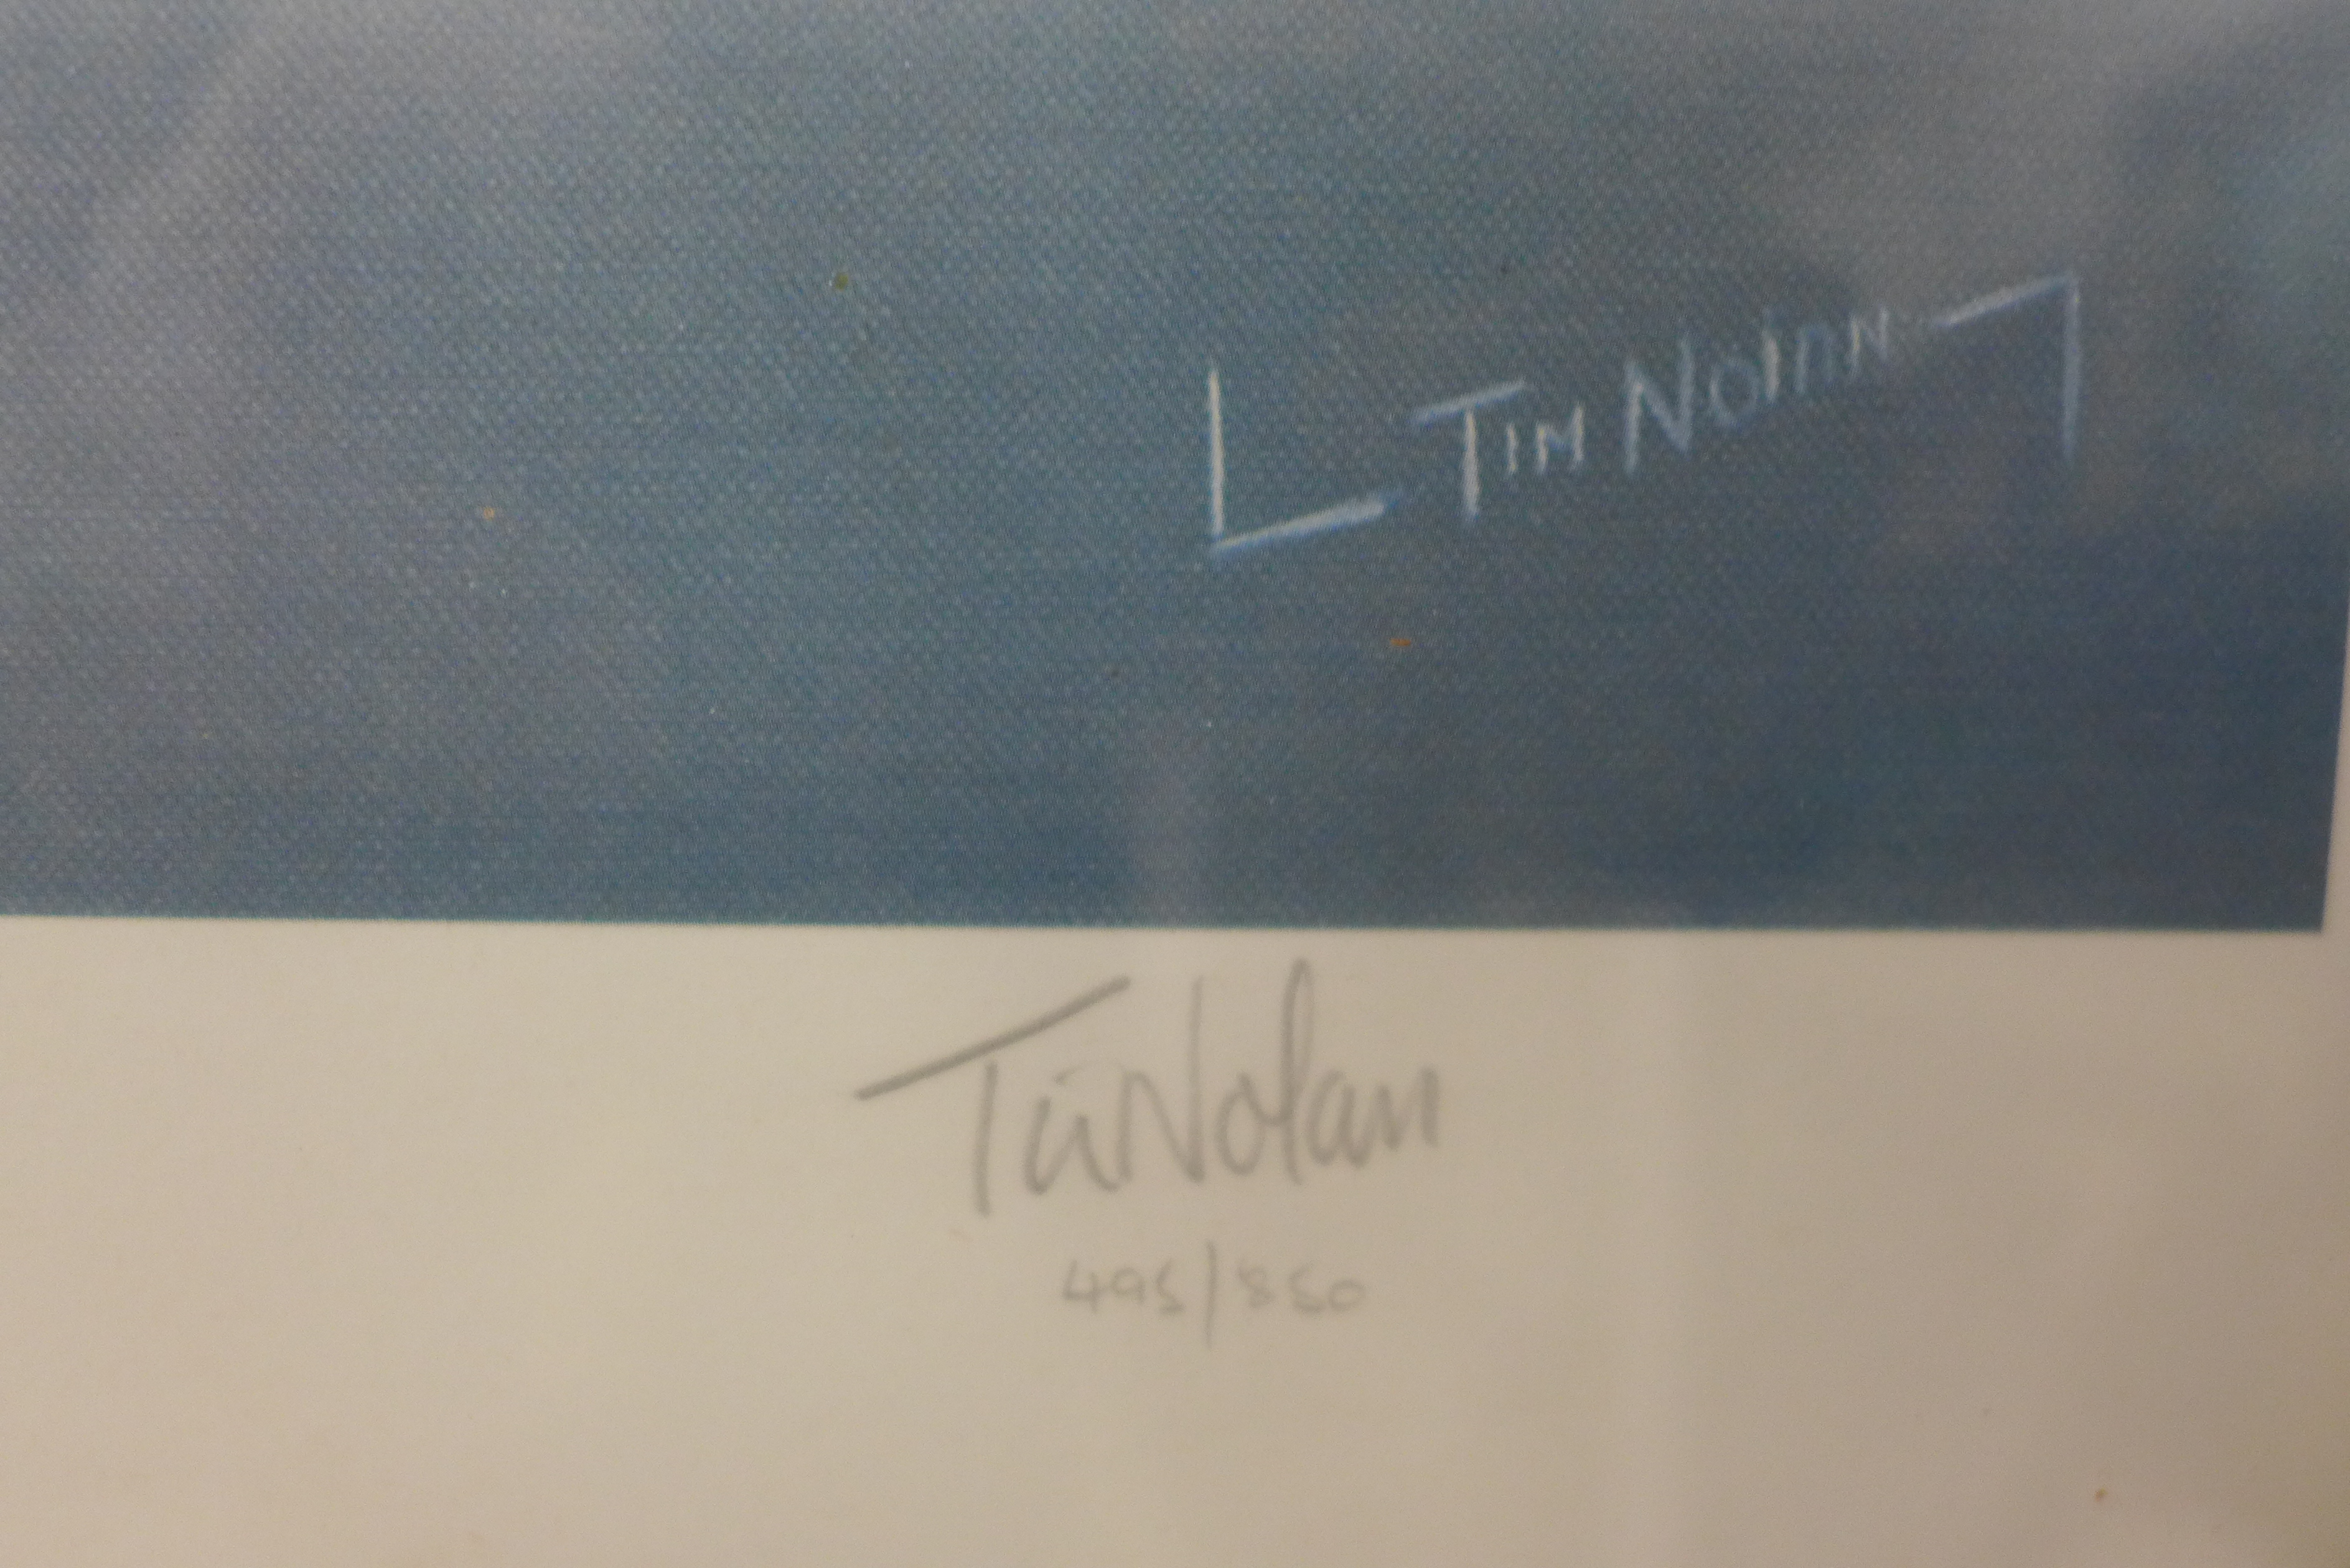 A signed Tim Nolan print, Lightning F6, framed - Image 2 of 4